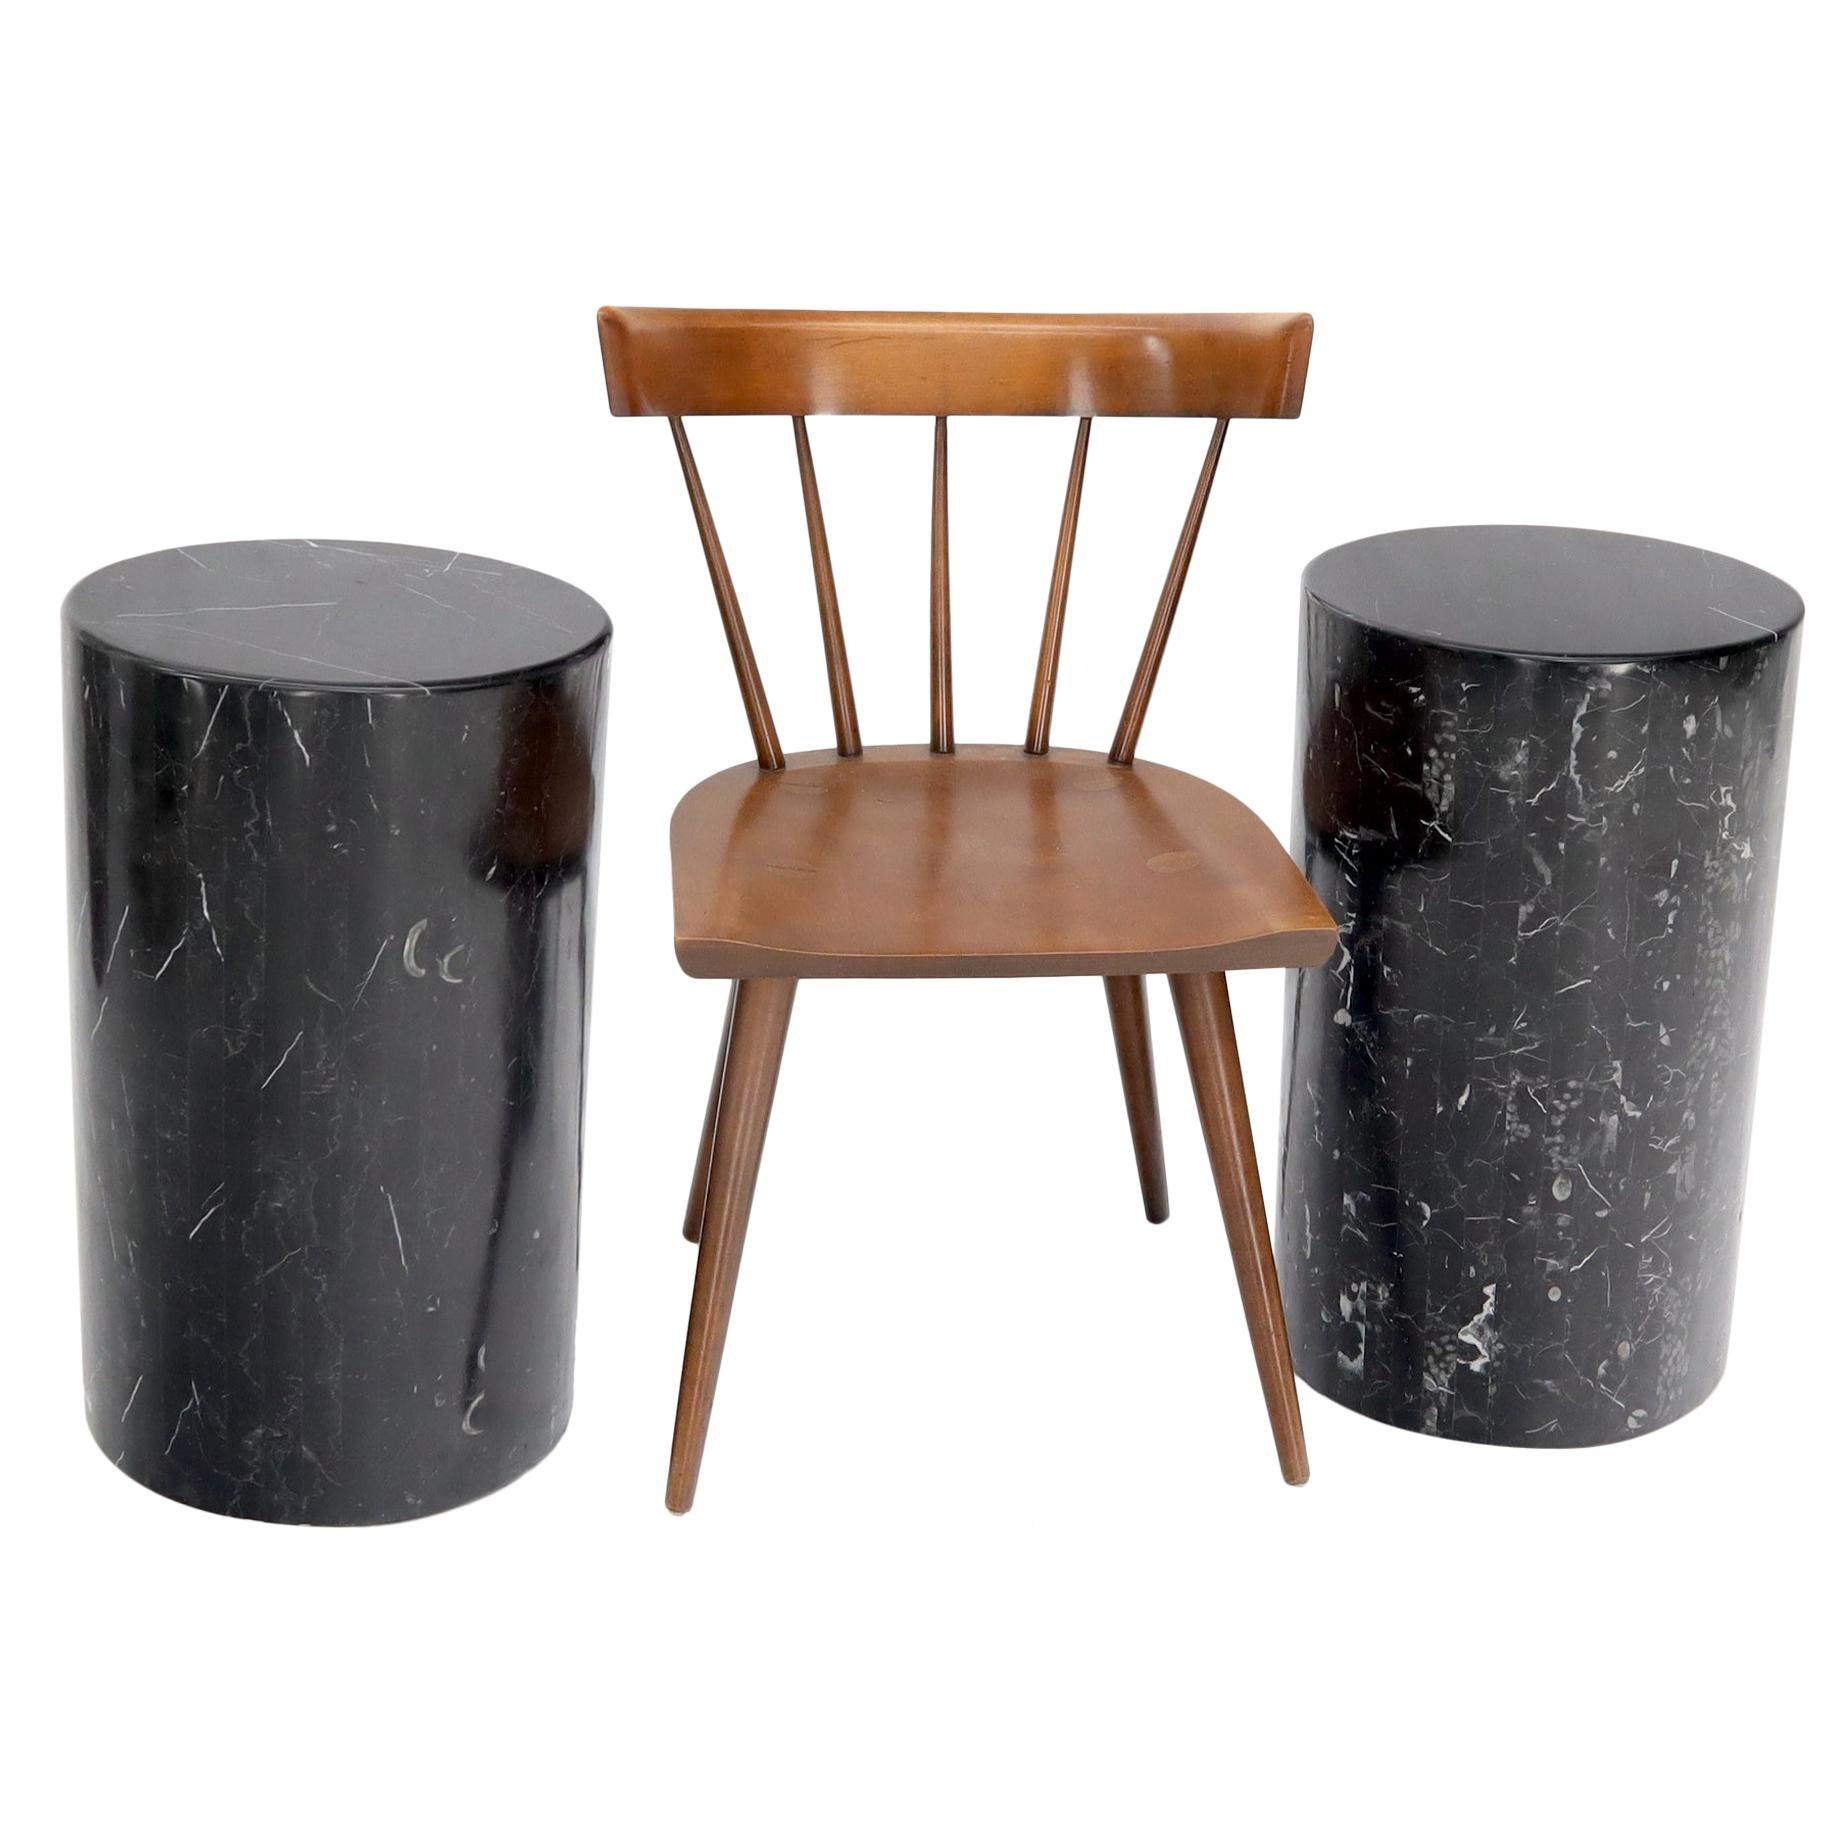 Ein Paar schwarzer Marmorsteinfurniere, gefliest, runde zylindrische Pedestale